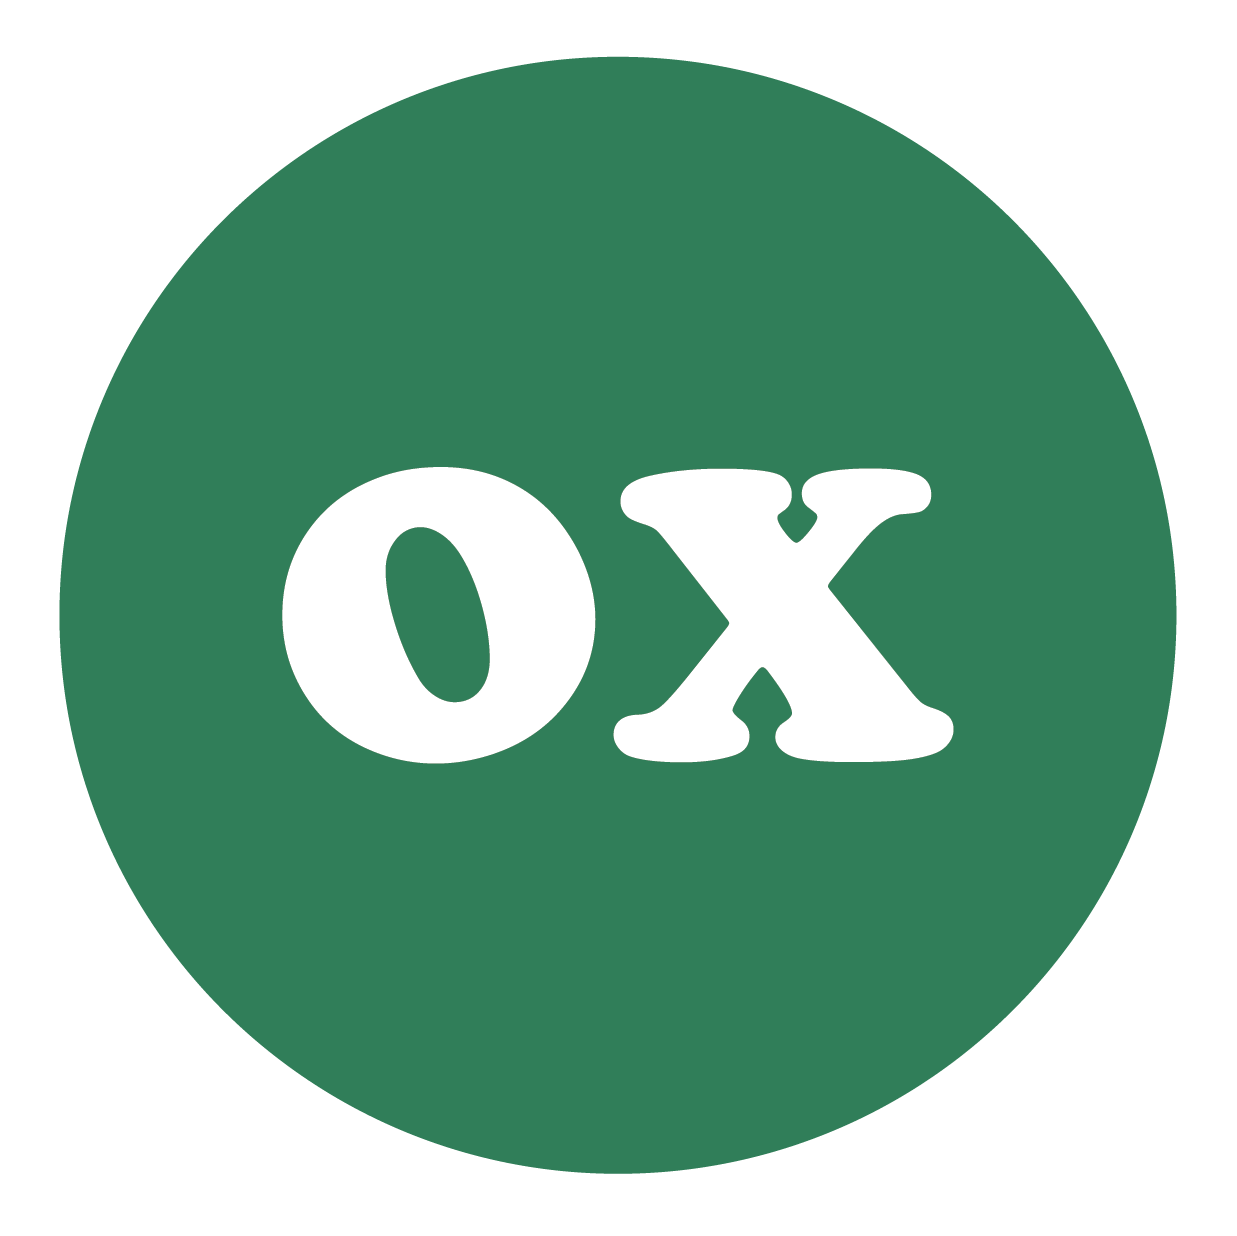 Ox-Bow